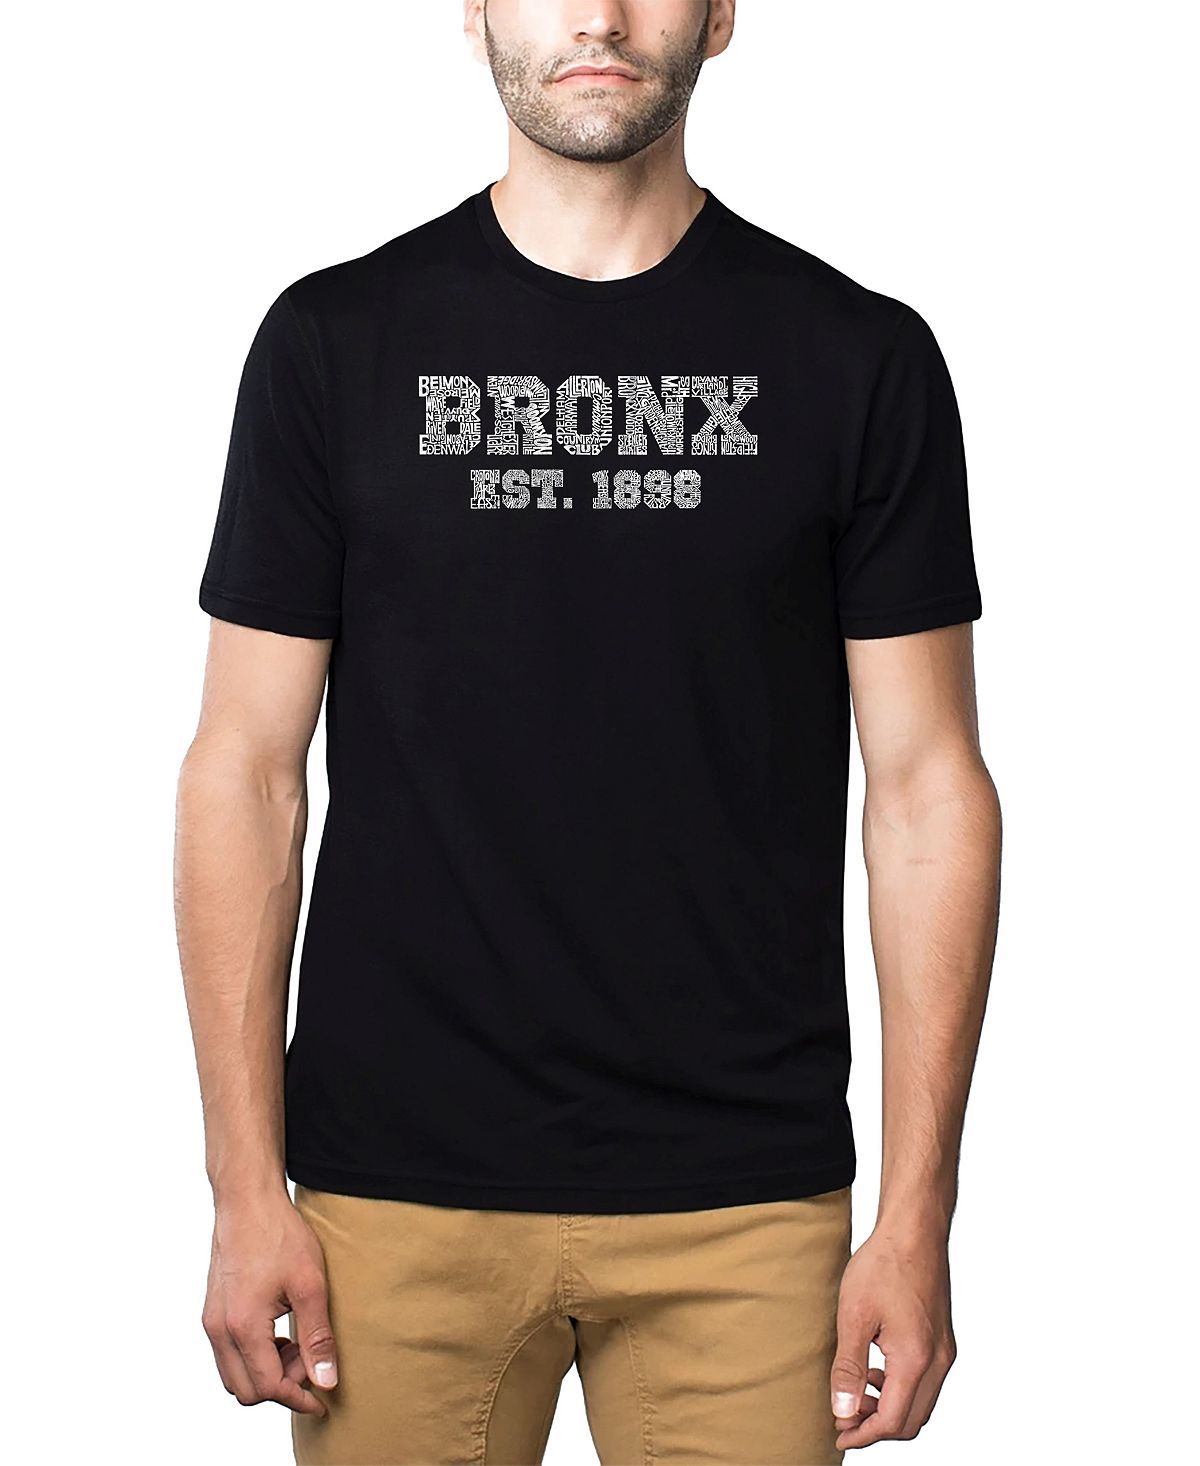 Мужская футболка premium blend word art - популярный бронкс, районы нью-йорка LA Pop Art, черный этим утром в нью йорке